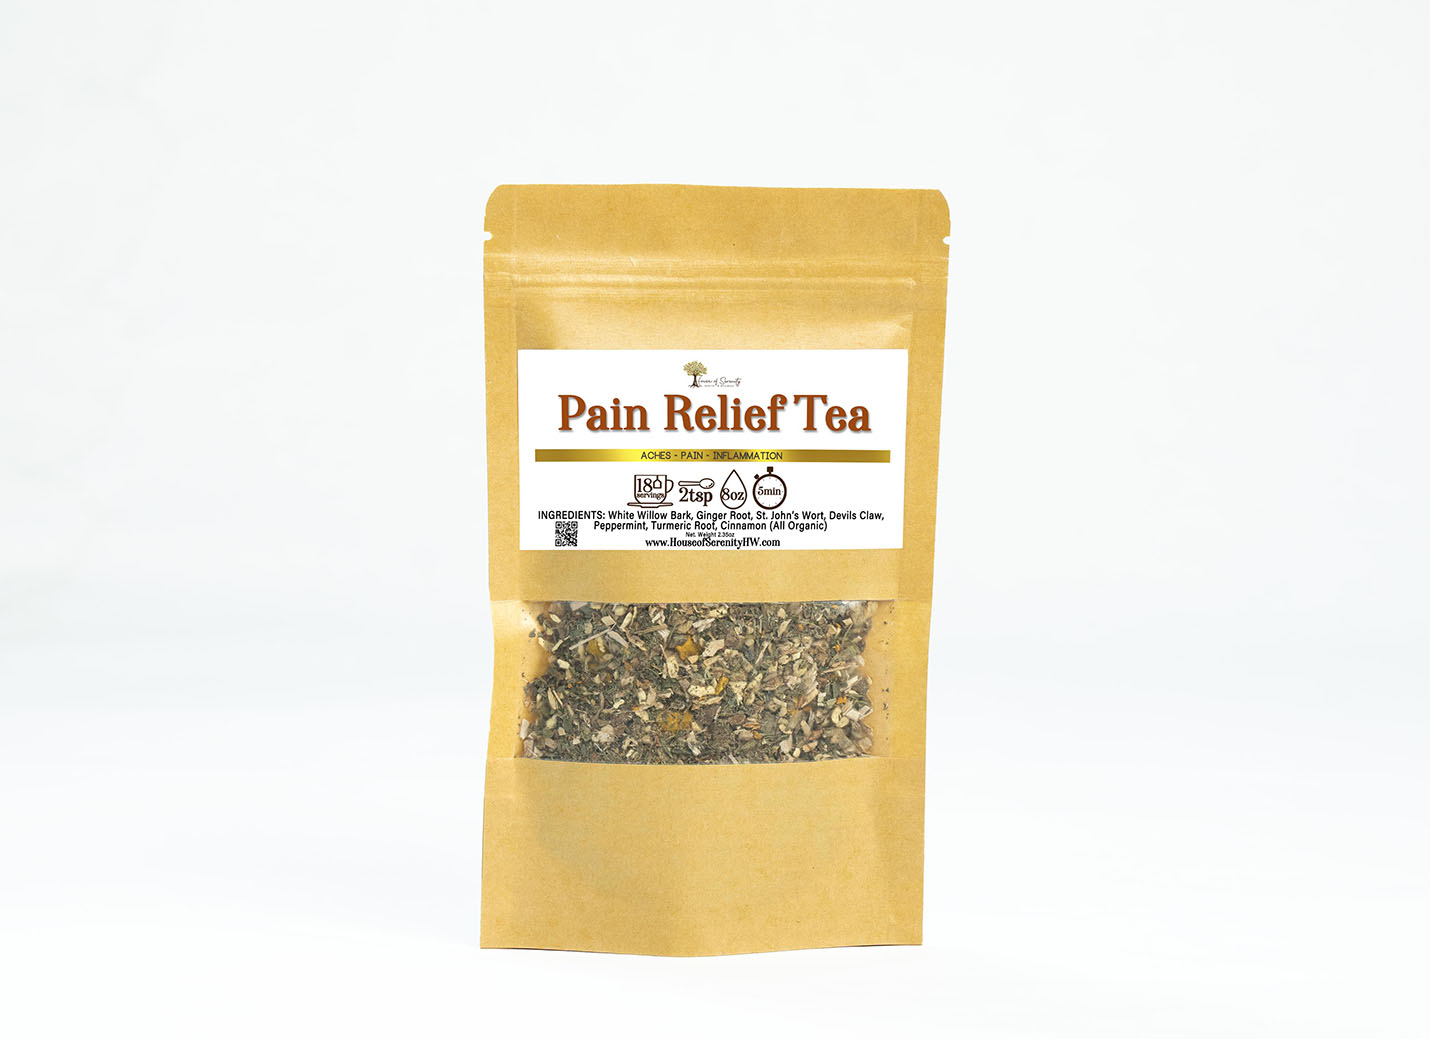 Pain Relief Tea